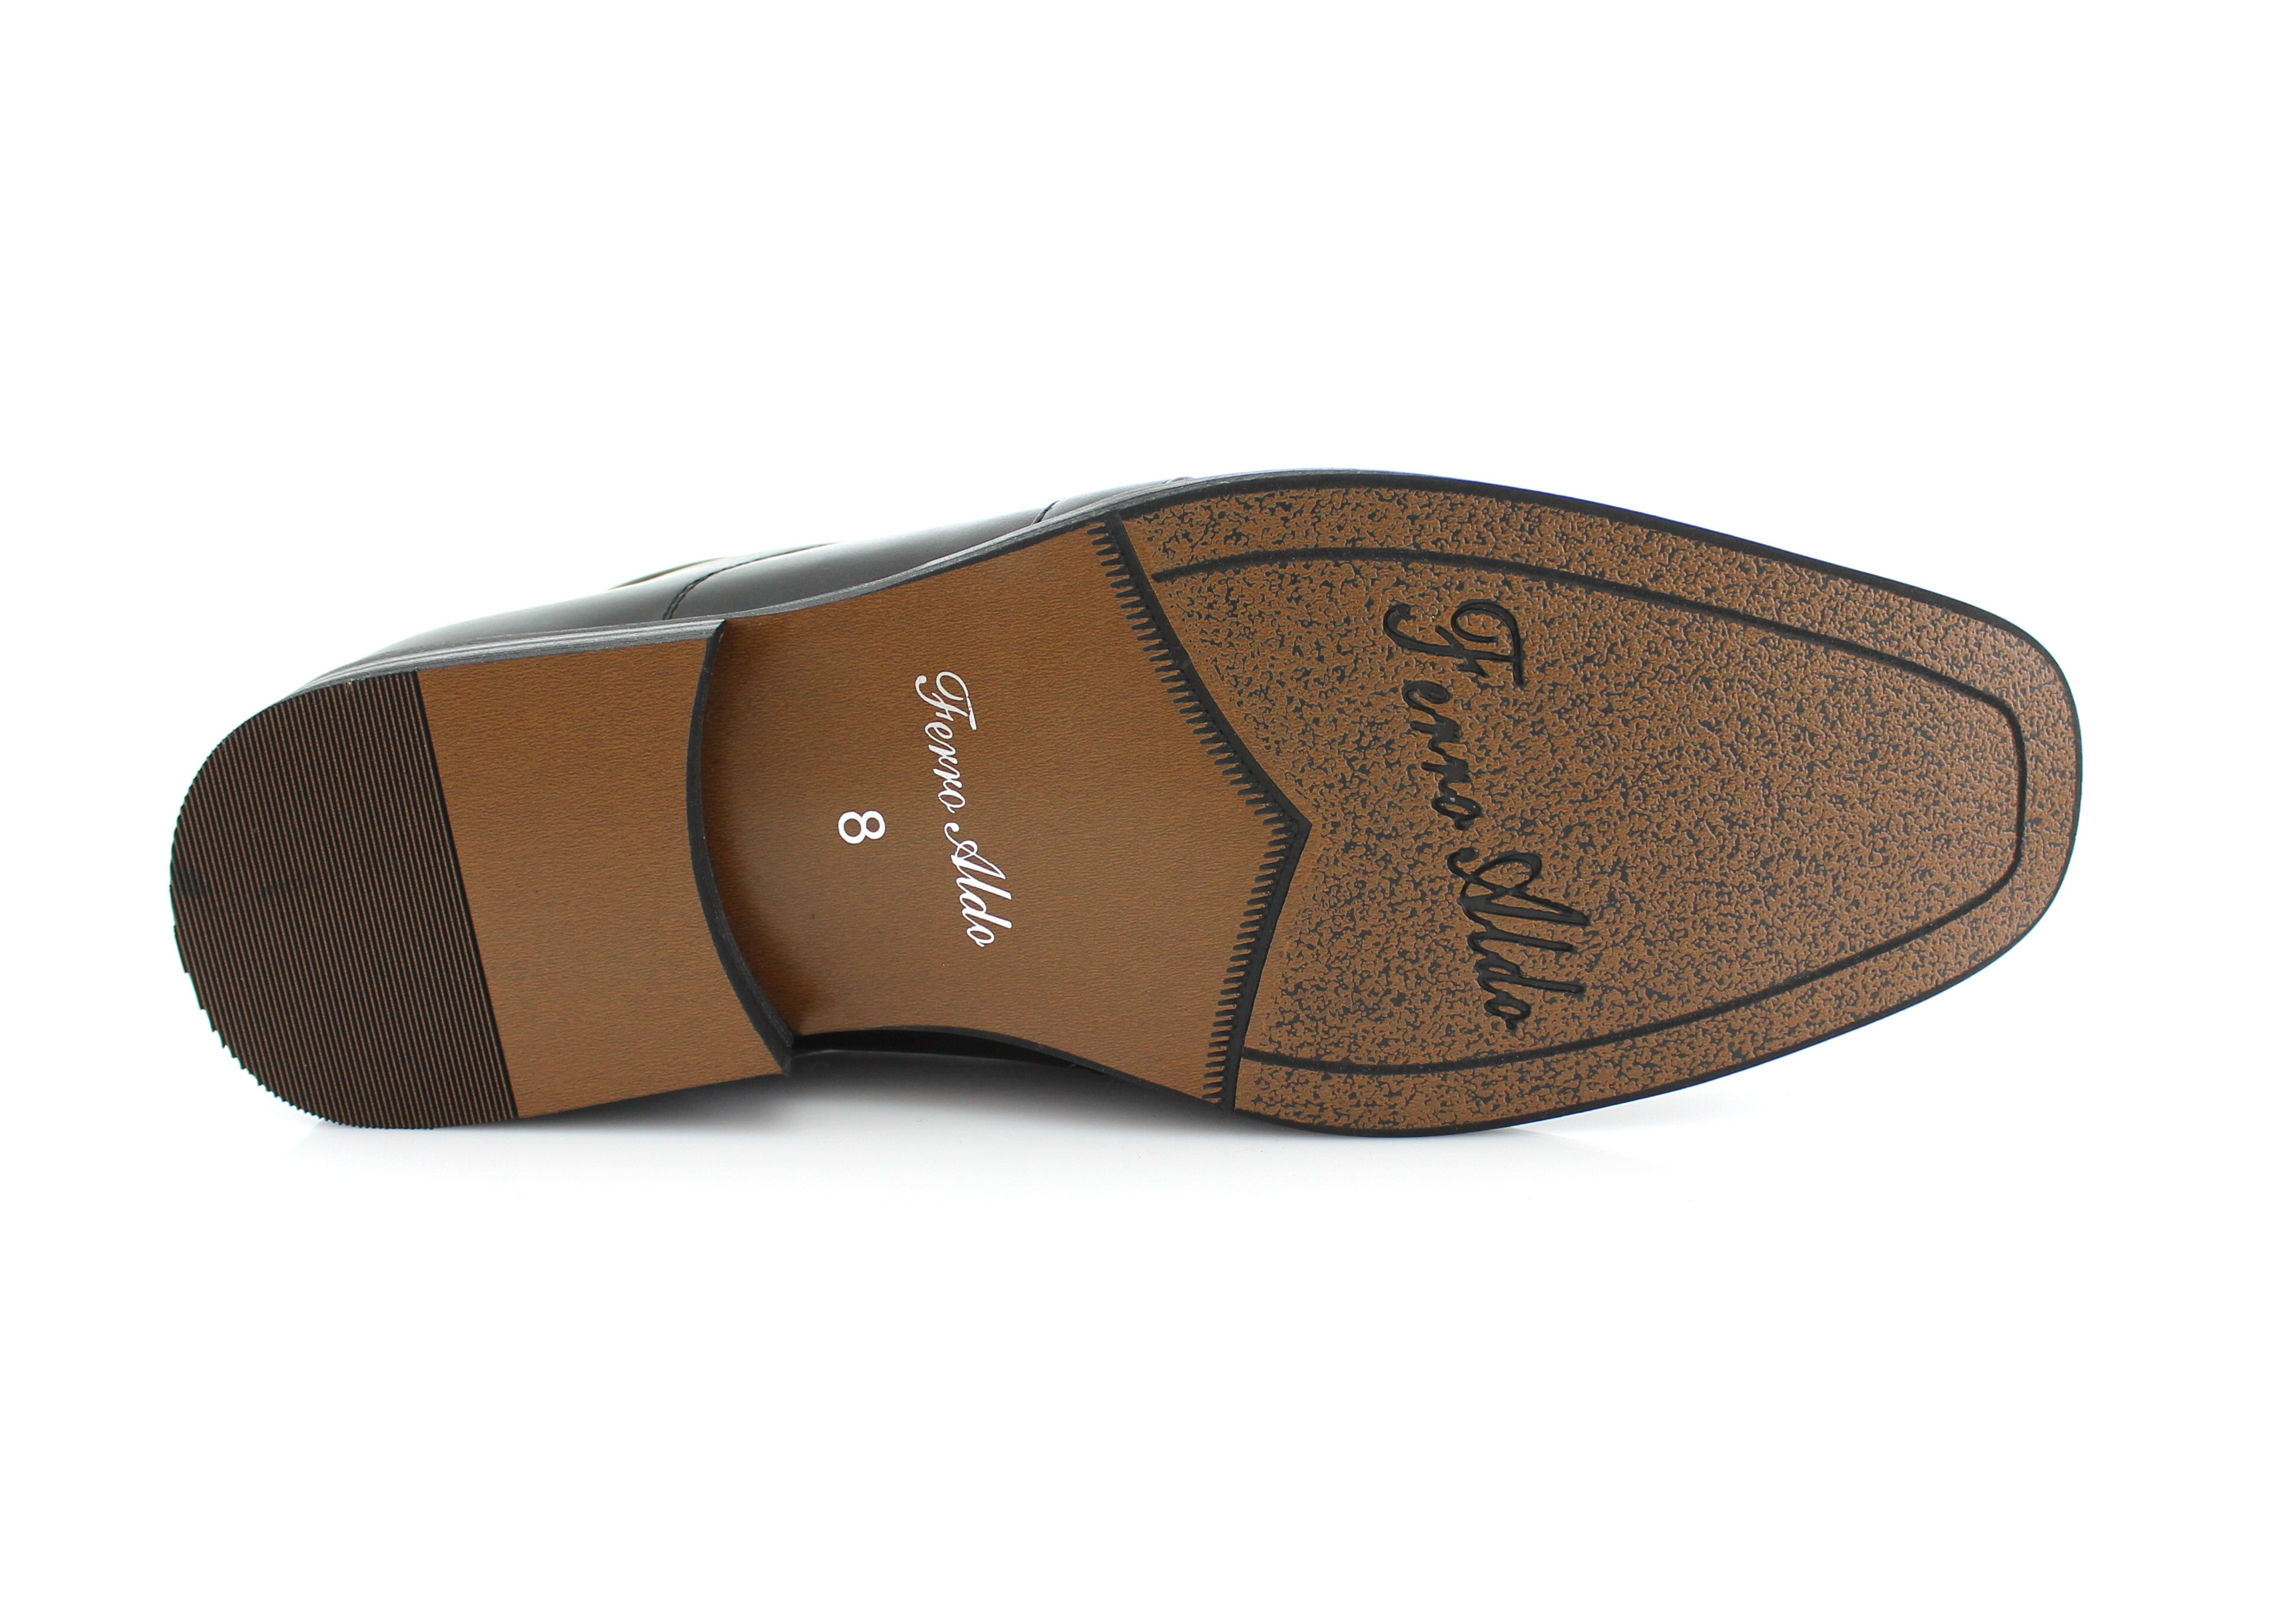 Ferro Aldo Buckle Loafers | Jesus by Ferro Aldo | Conal Footwear | Bottom Sole Angle View